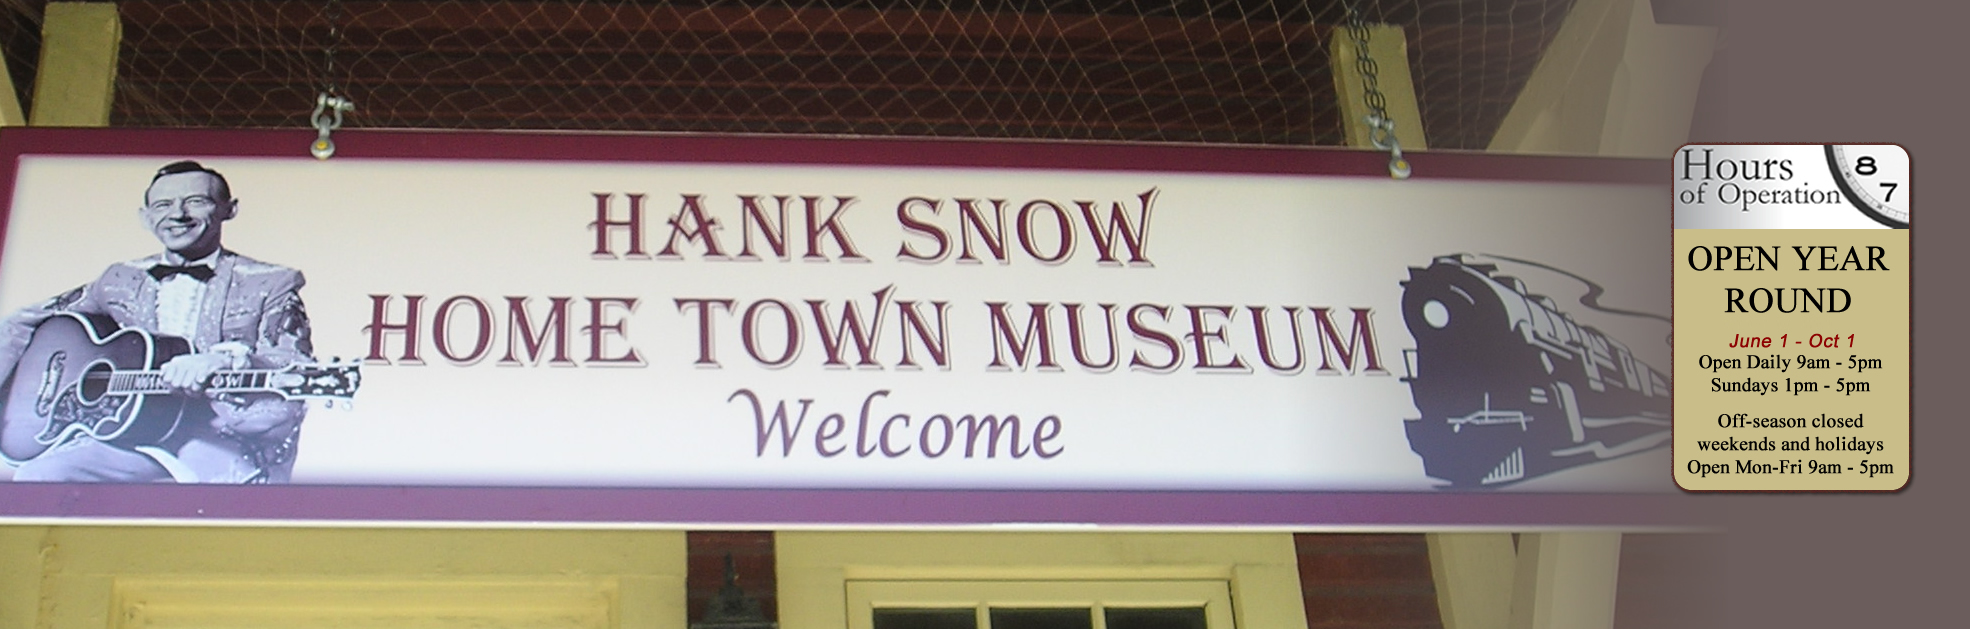 HANK SNOW MUSEUM OPEN THIS WEEKEND. OPEN FOR SEASON JUNE 5